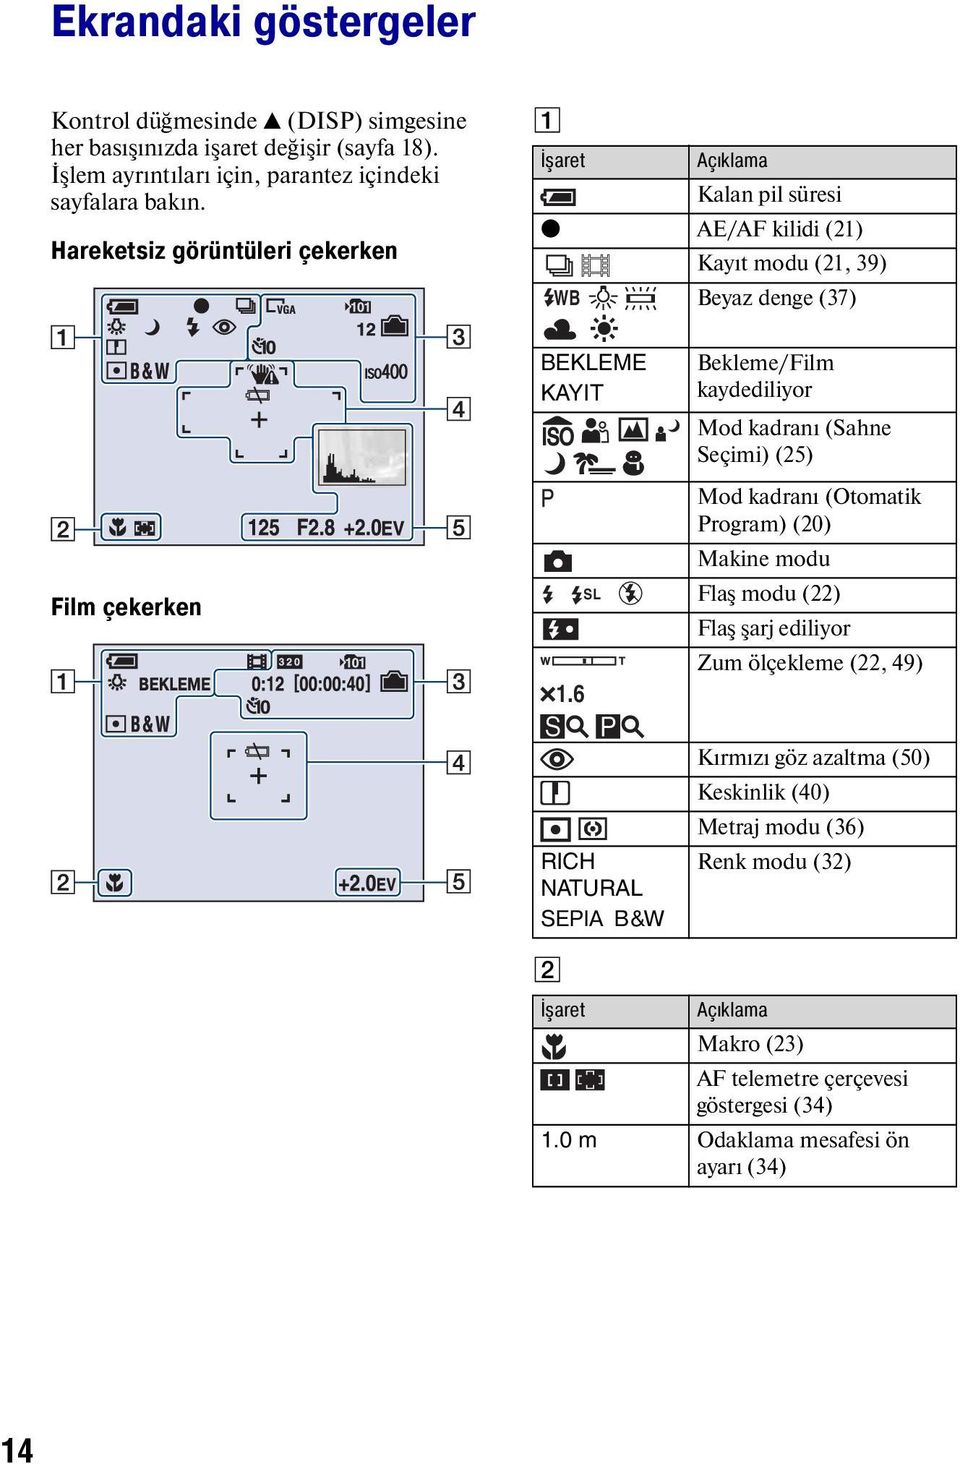 6 SL Bekleme/Film kaydediliyor Mod kadranı (Sahne Seçimi) (25) Mod kadranı (Otomatik Program) (20) Makine modu Flaş modu (22) Flaş şarj ediliyor Zum ölçekleme (22, 49) RICH